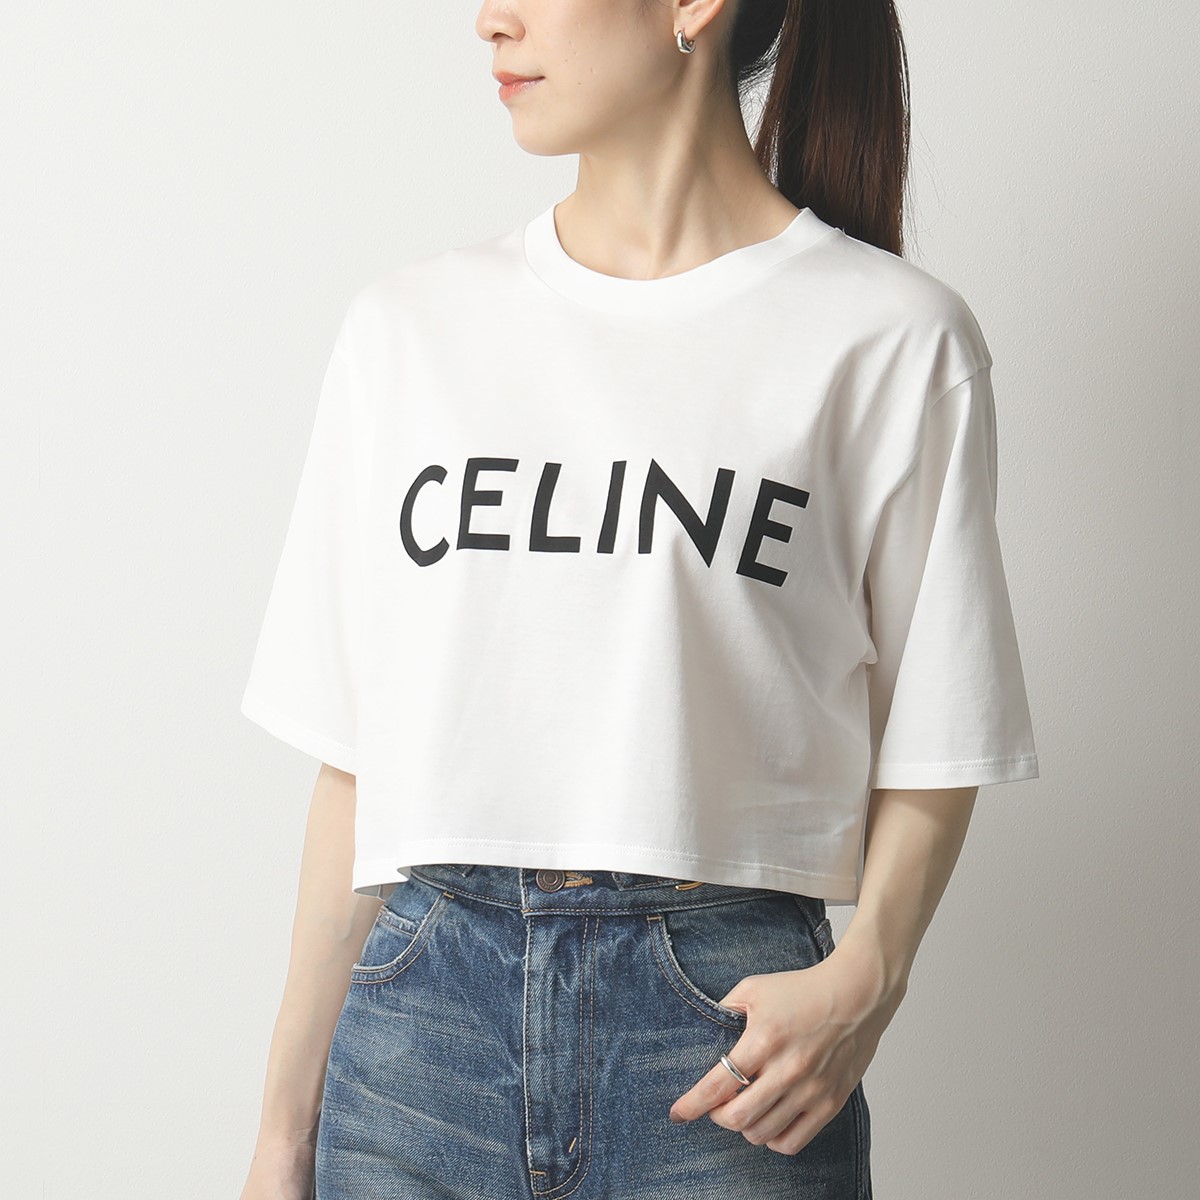 CELINE セリーヌ 2X761501F.01EA クロップド Tシャツ コットンジャージー 半袖 カットソー クルーネック ロゴT  レディース インポートセレクト musee